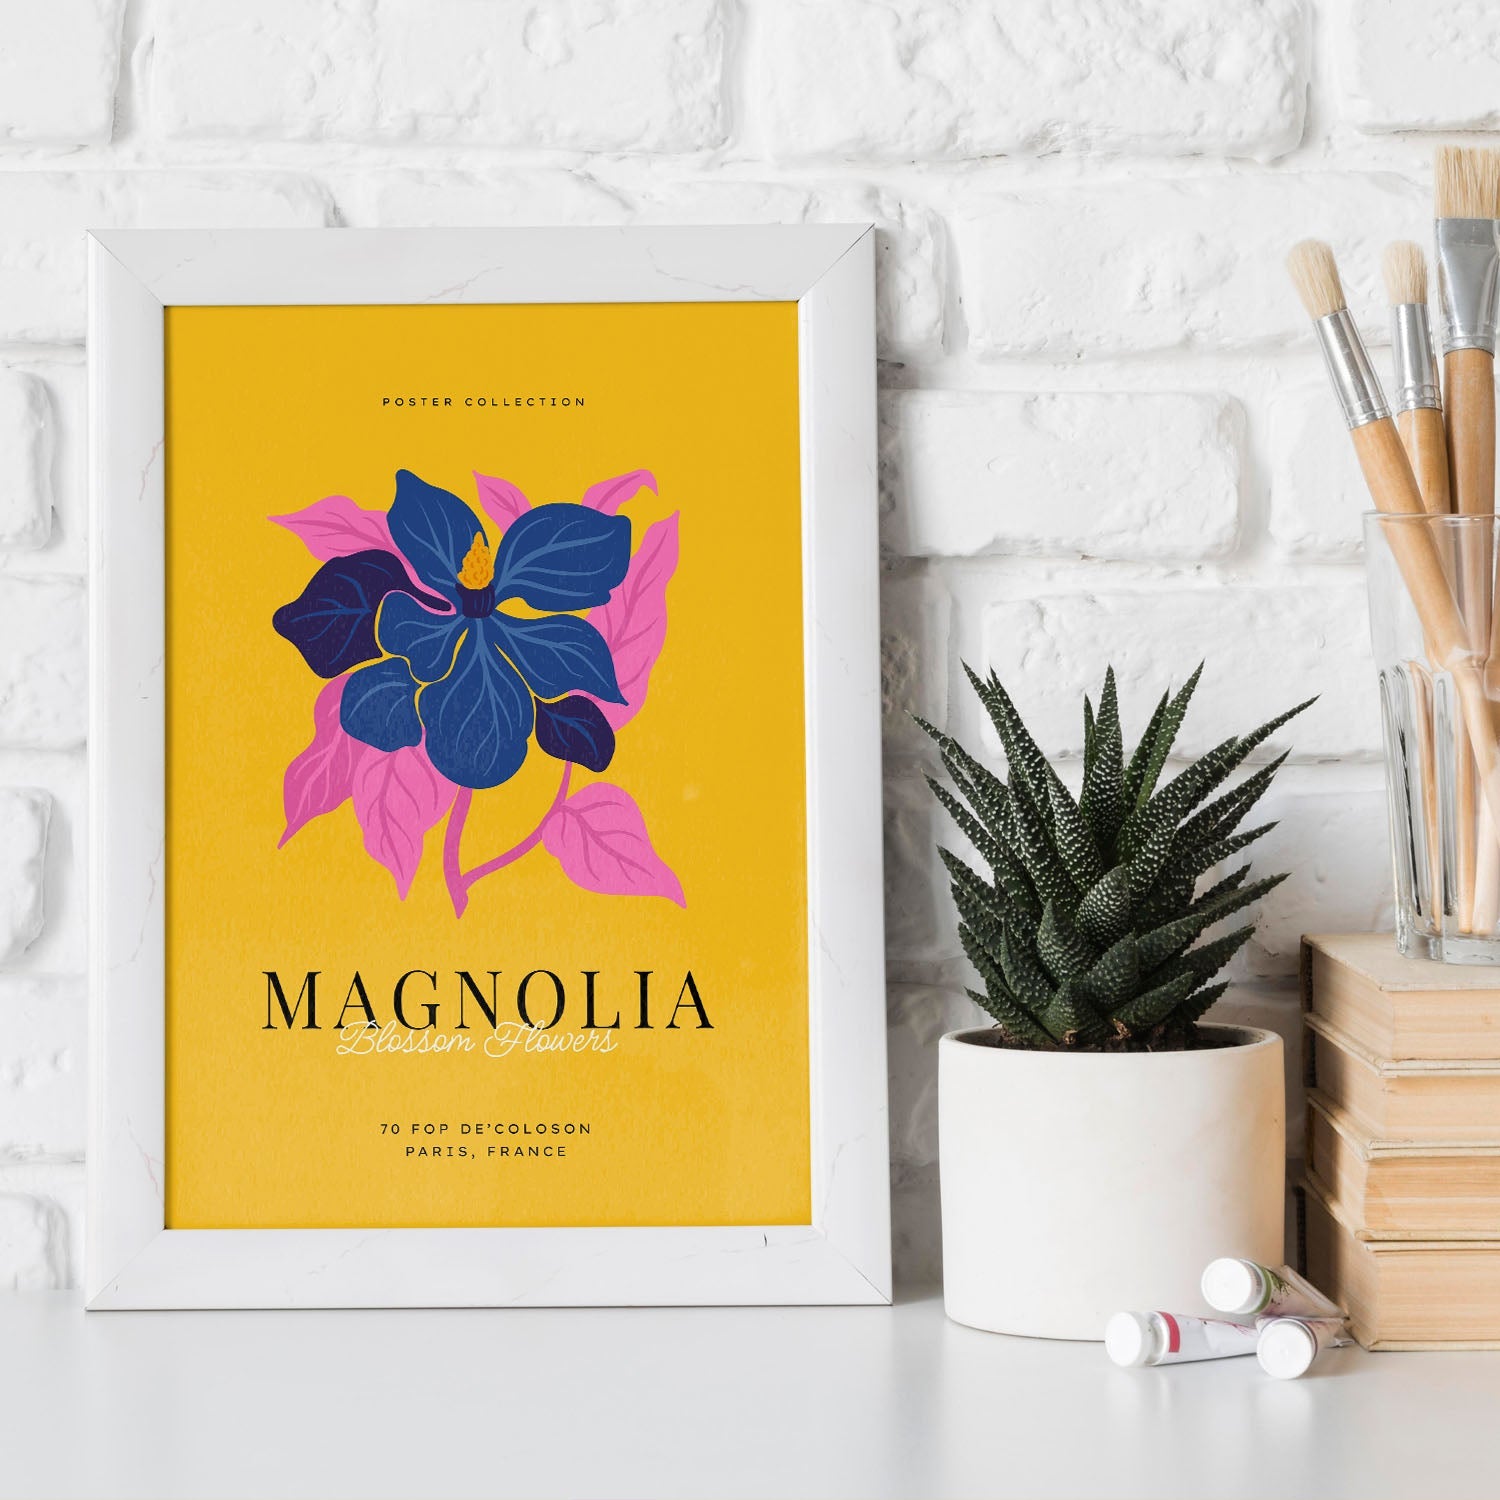 Magnolia-Artwork-Nacnic-Nacnic Estudio SL